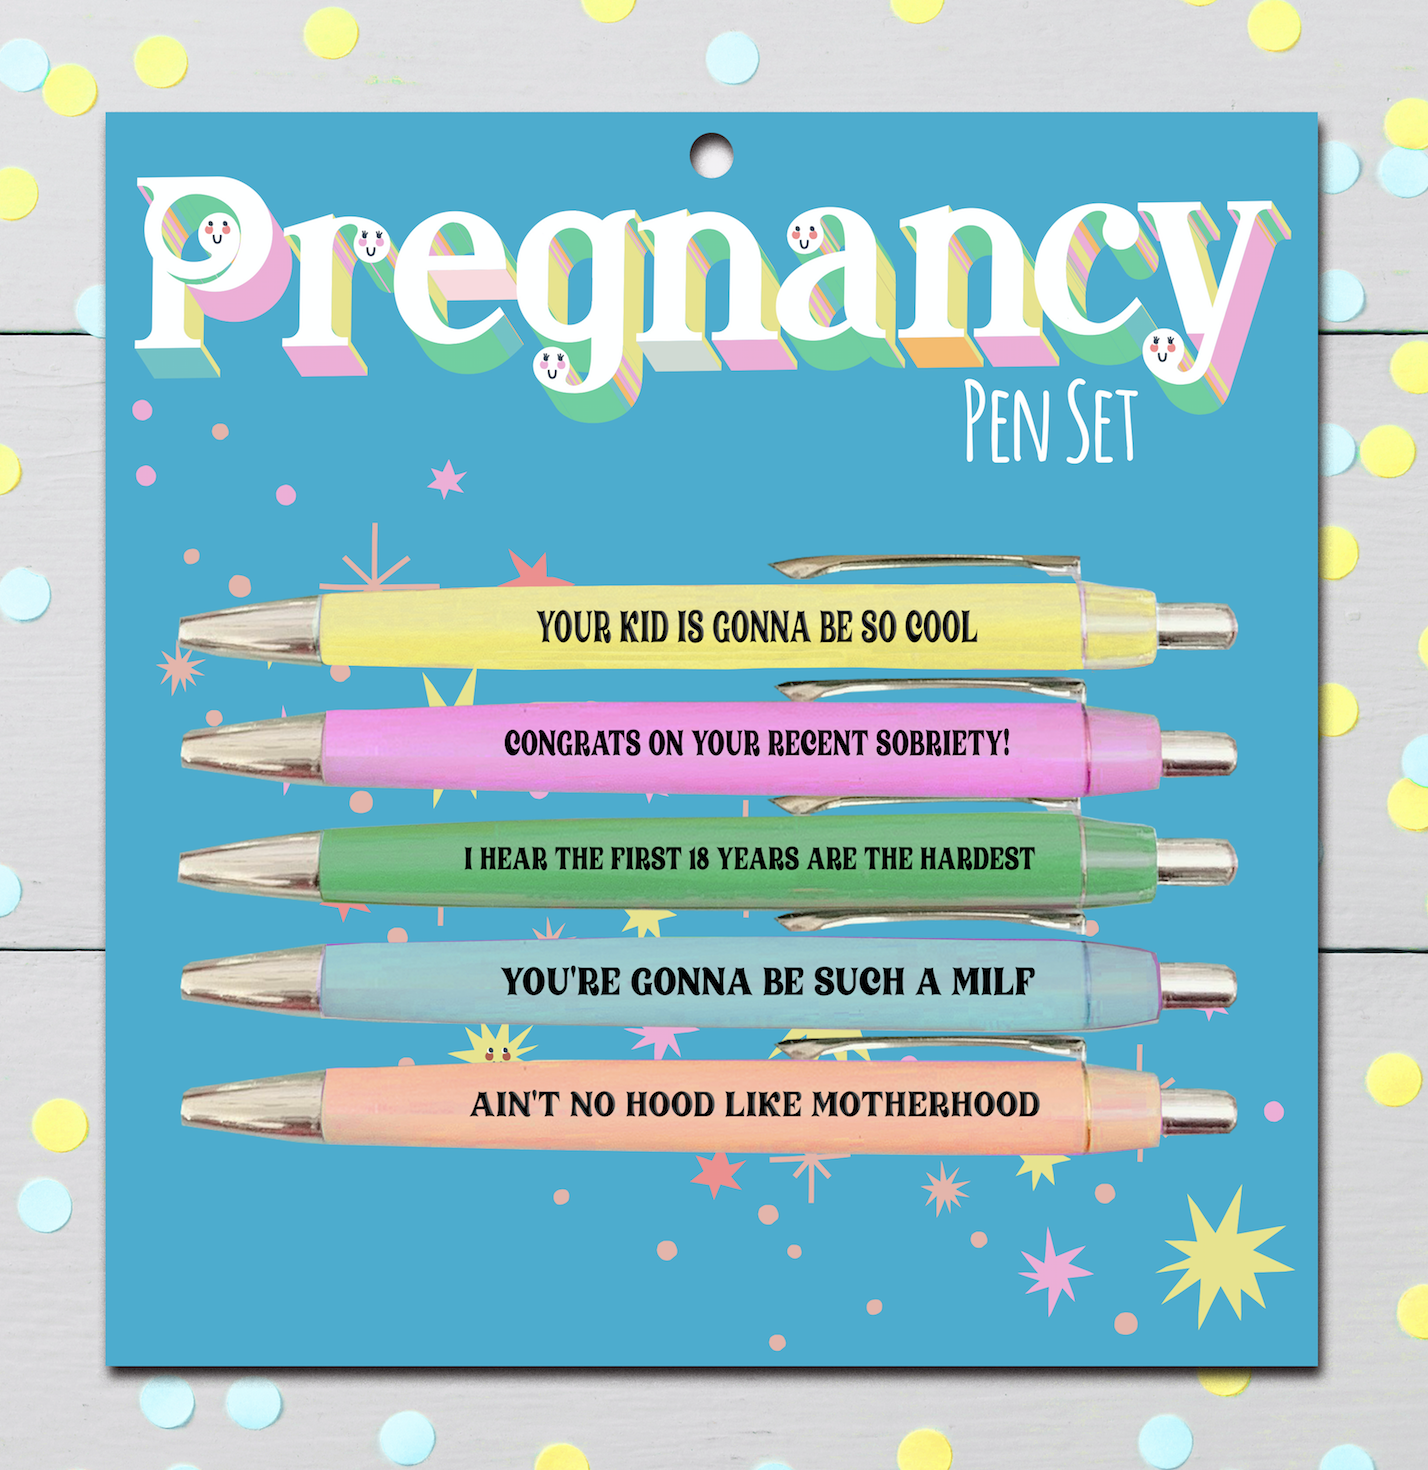 FUN CLUB - Pregnancy Pen Set